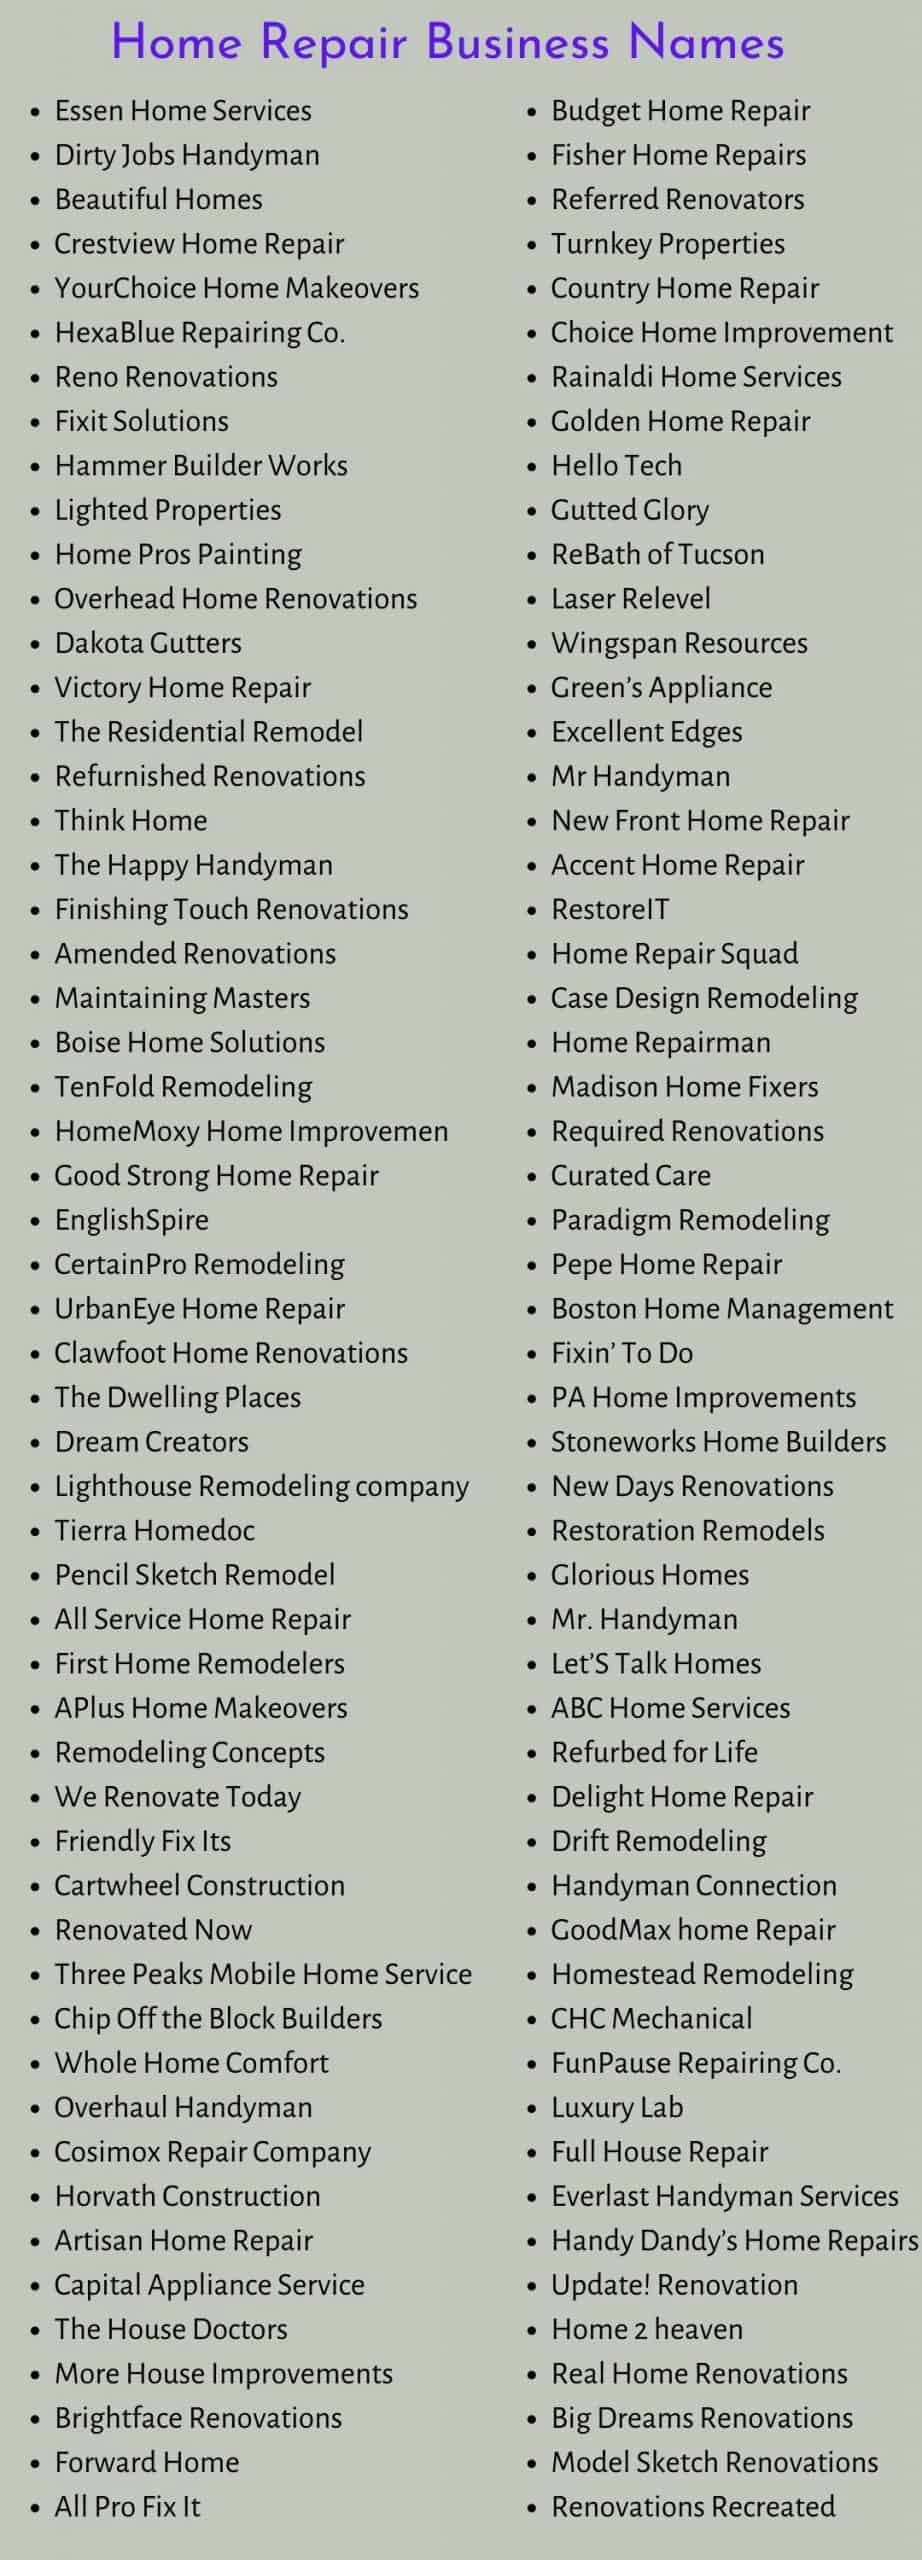 Home Repair Business Names